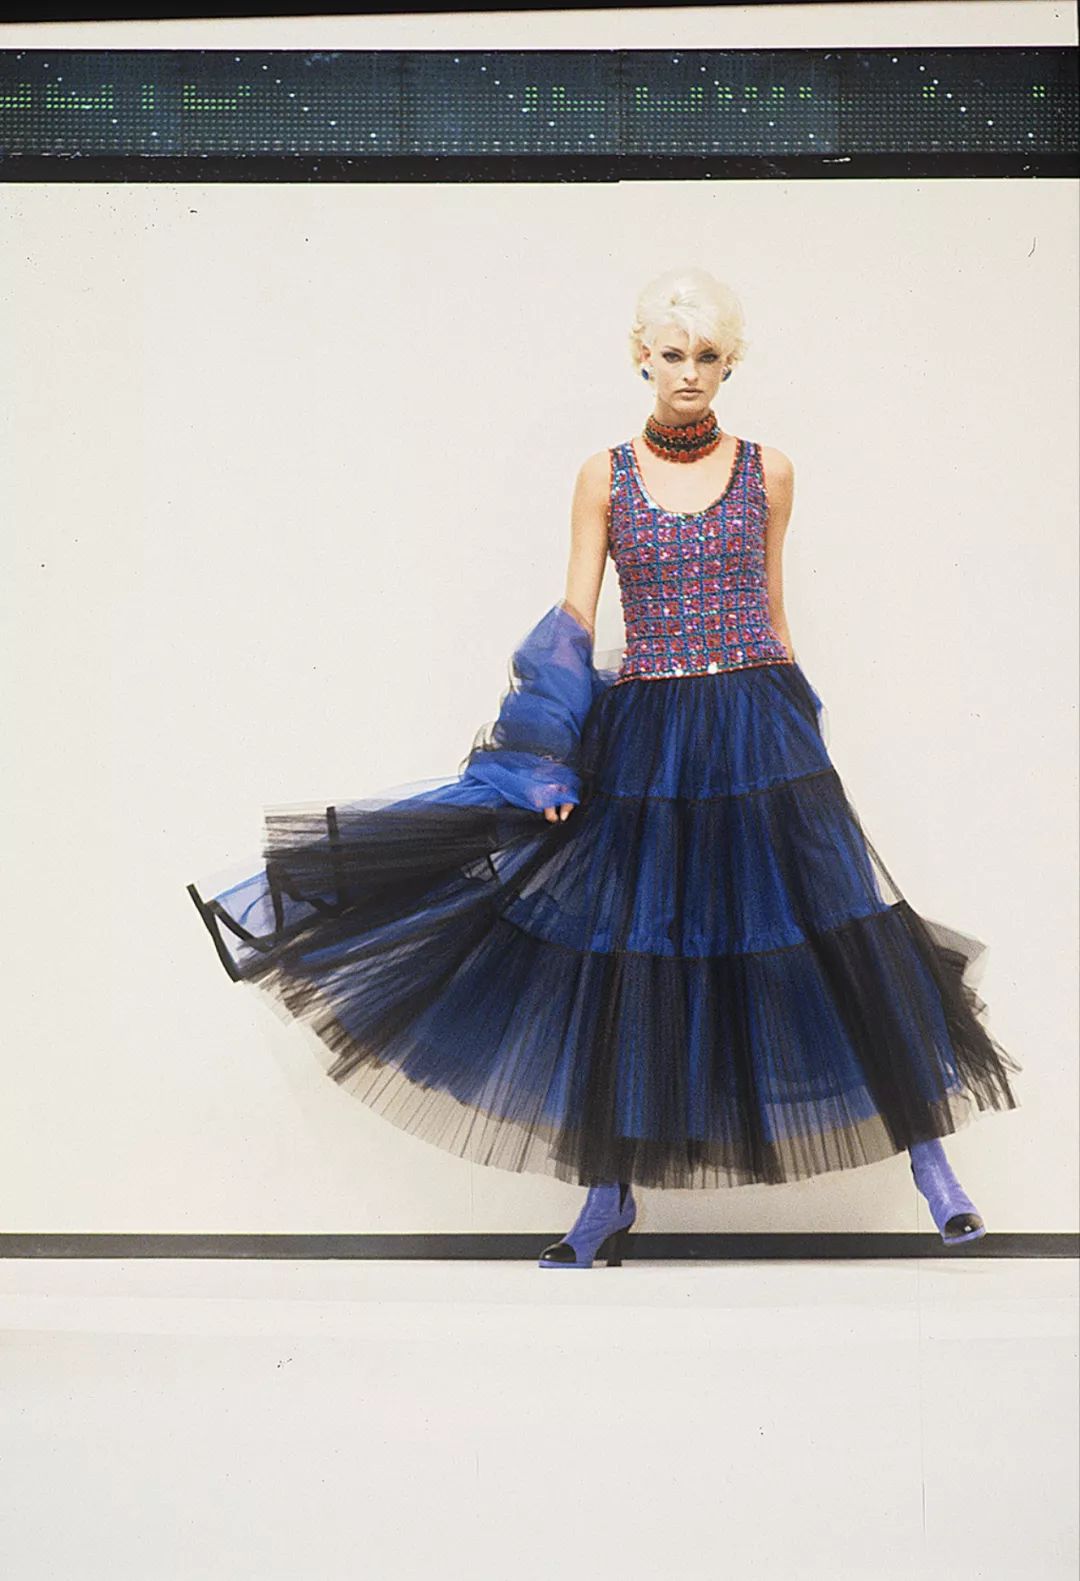 時尚 | 傳奇攝影師 Chris Moore 鏡頭下 Karl Lagerfeld 50年時裝秀場回顧 時尚 第6張